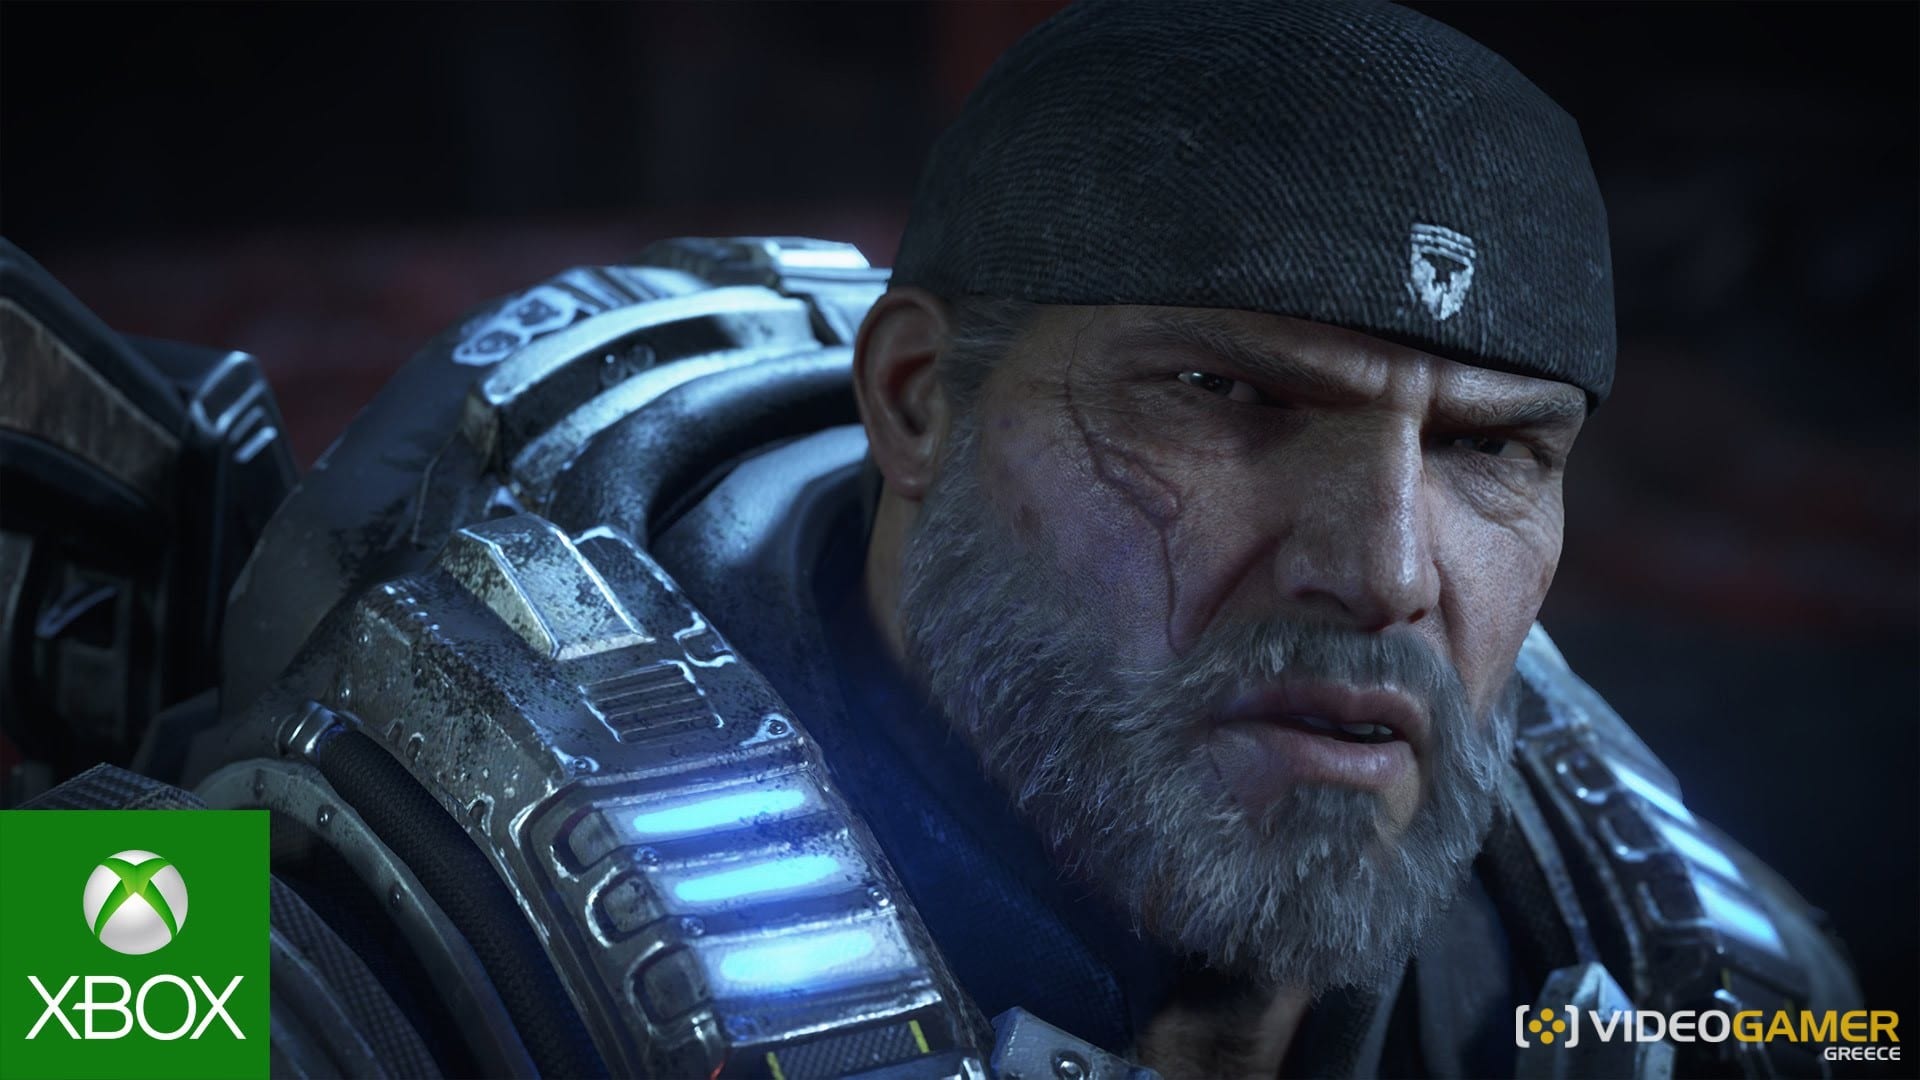 Δες το απίστευτο Launch Trailer του Gears of War 4 - videogamer.gr